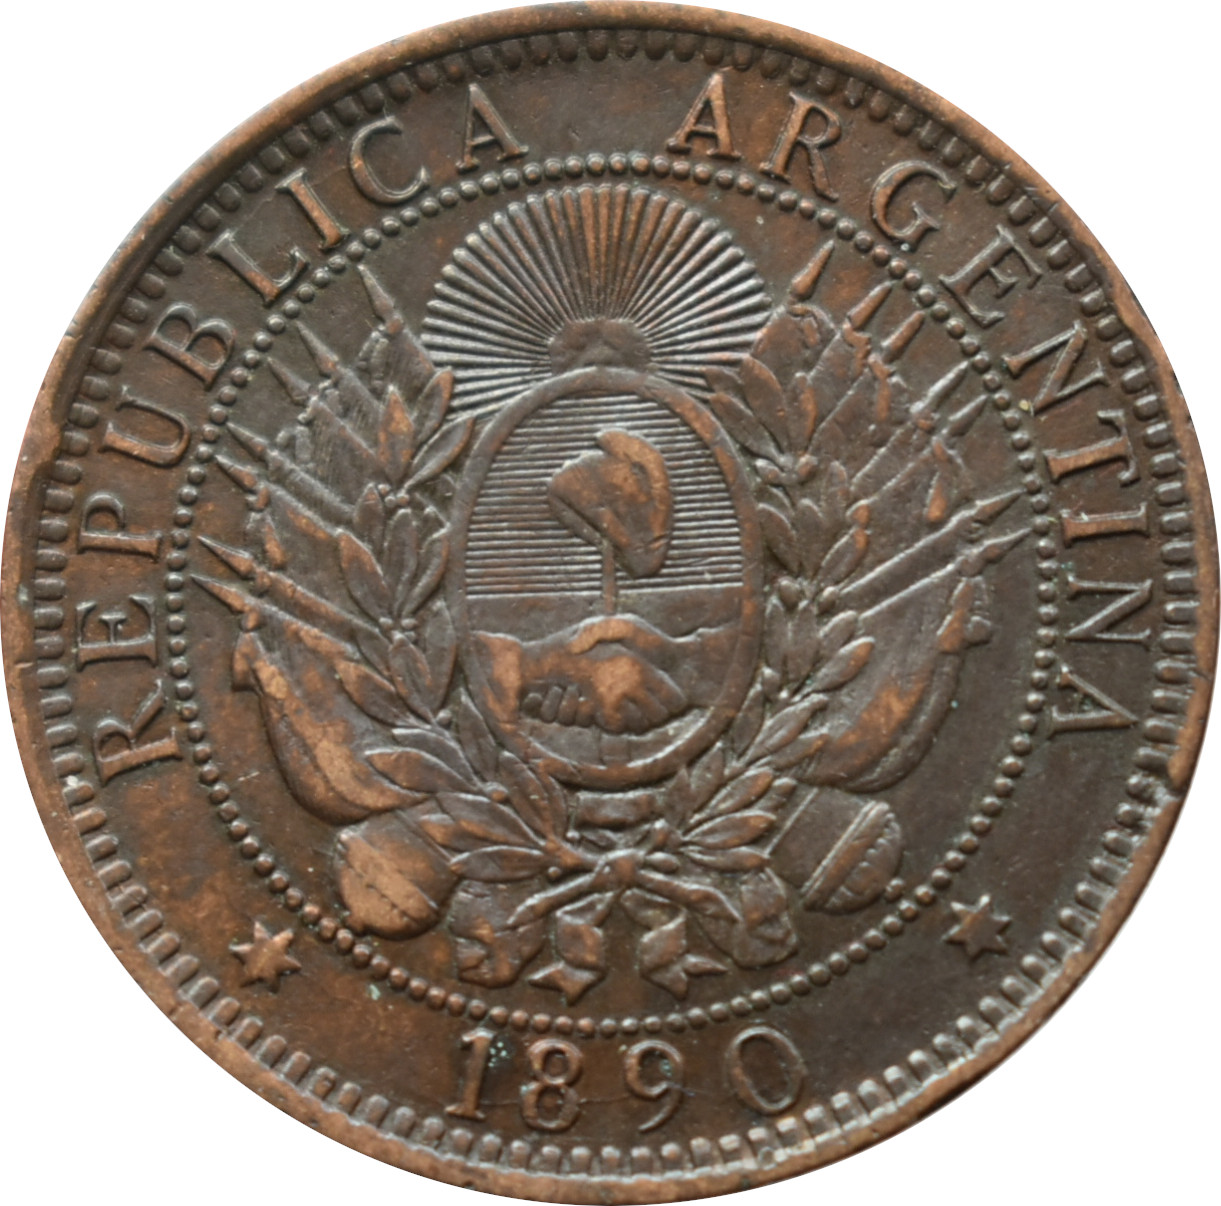 Argentína 2 Centavos 1890